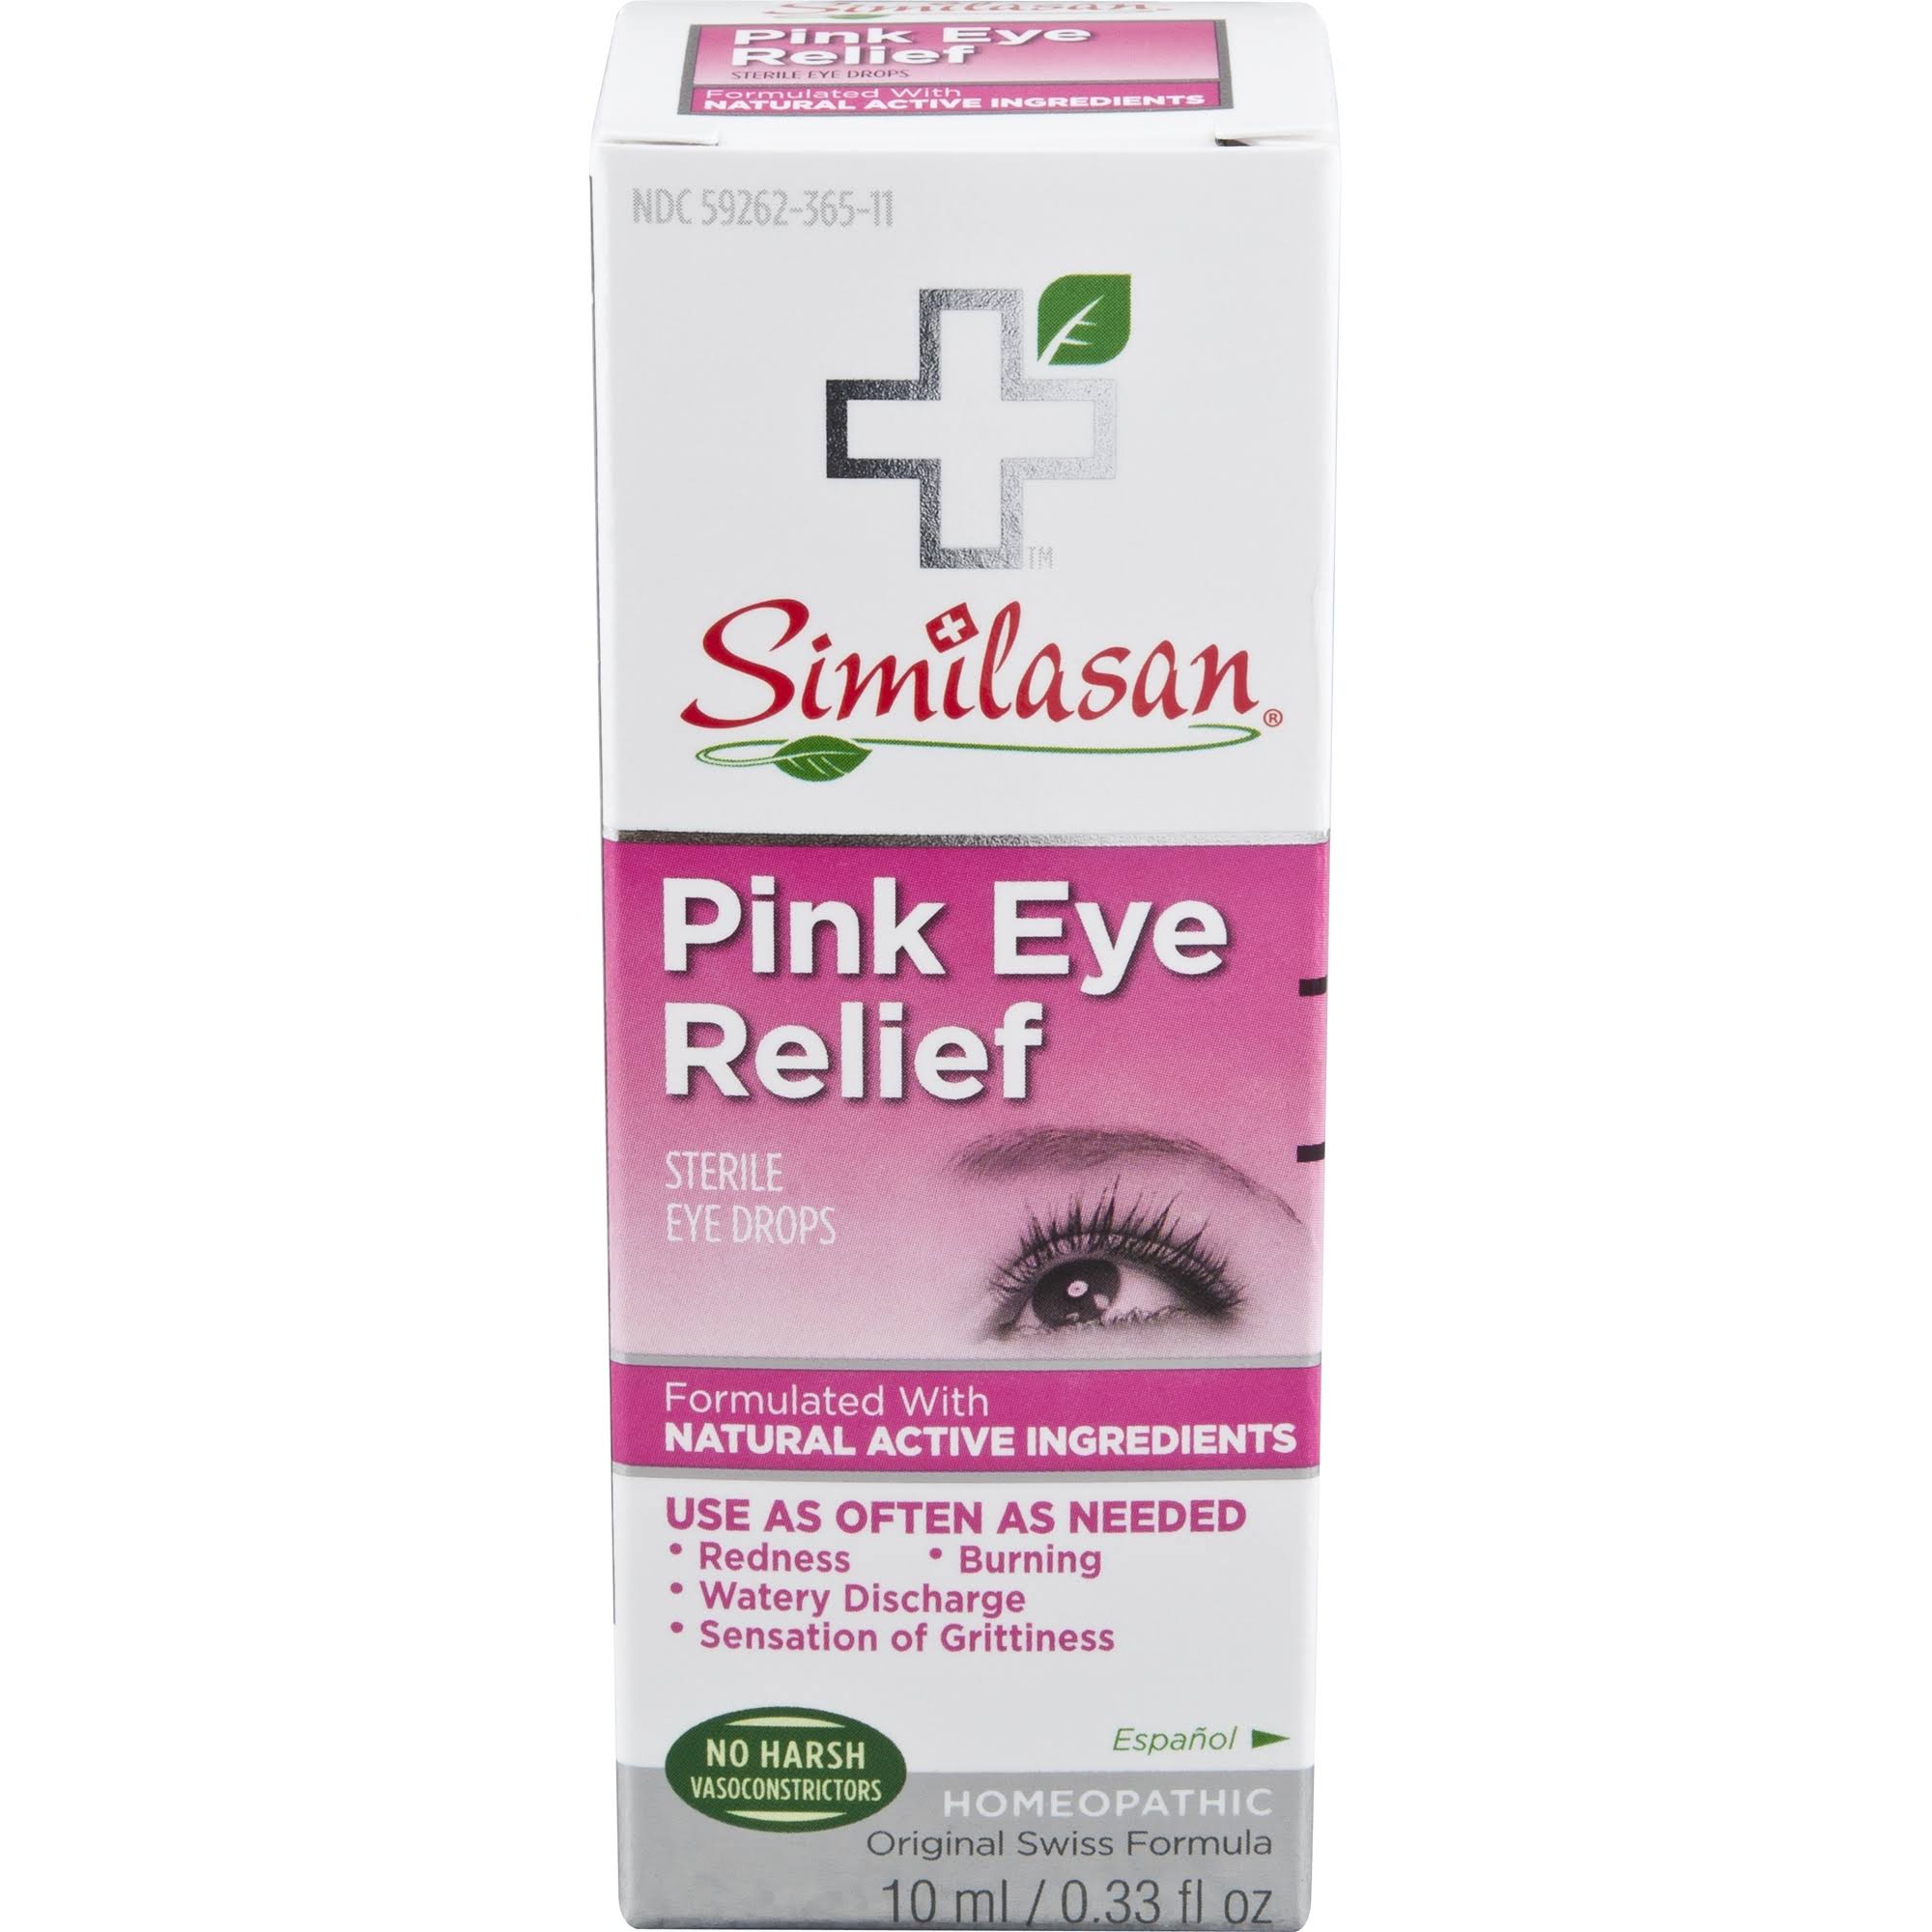 Similasan Pink Eye Relief Eye Drops - 0.33 oz dropper